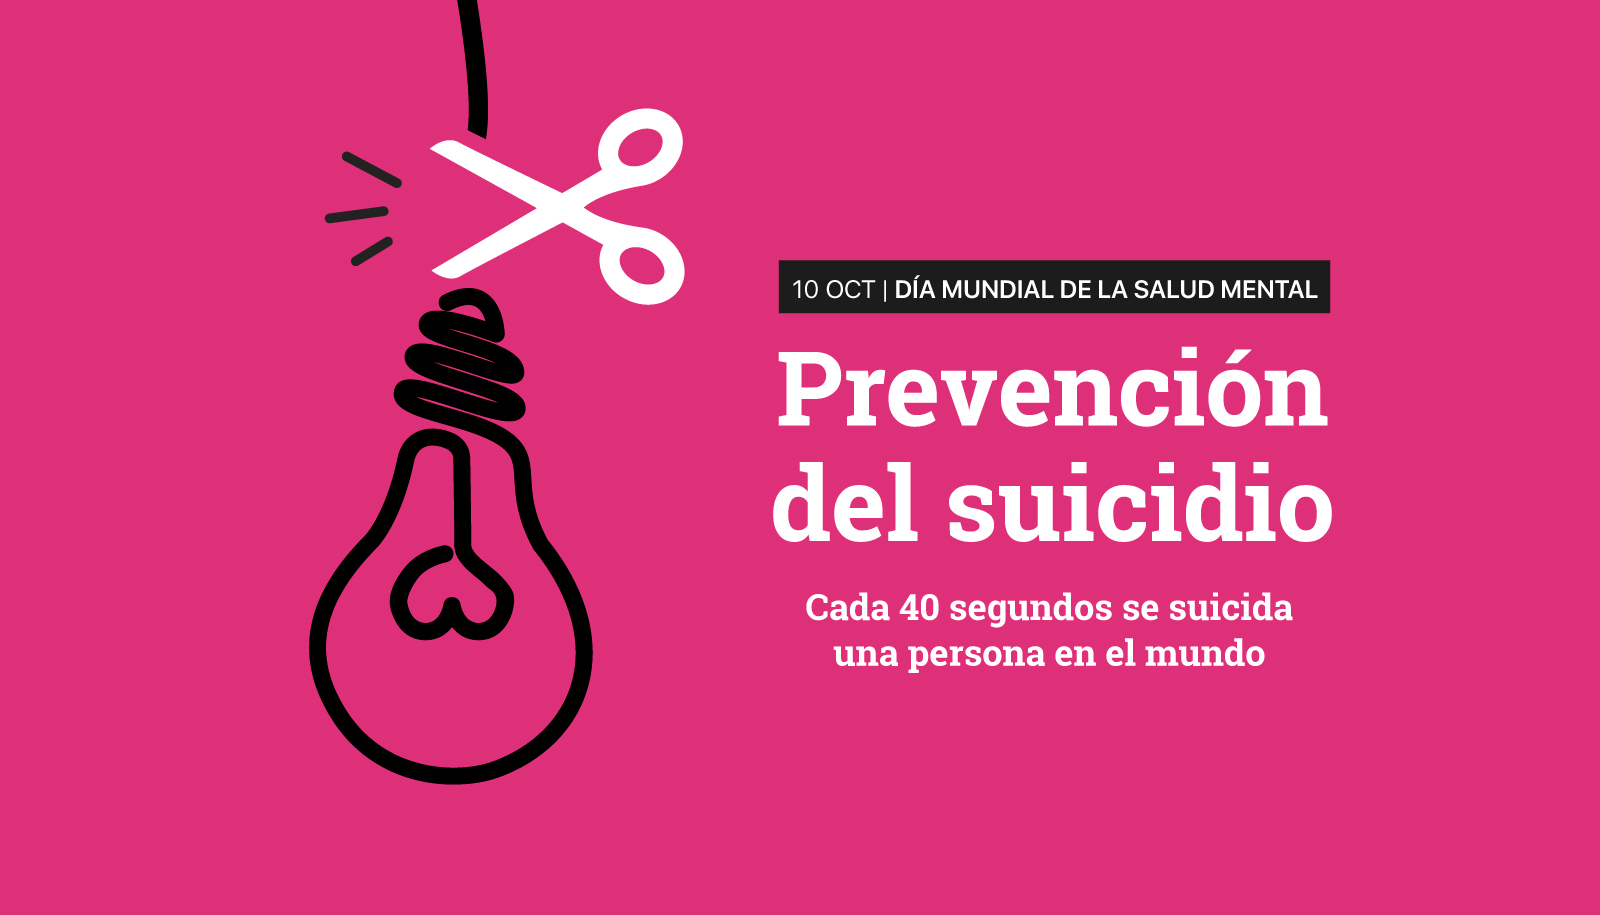 Día Mundial de la Salud Mental 2019: prevención del suicidio